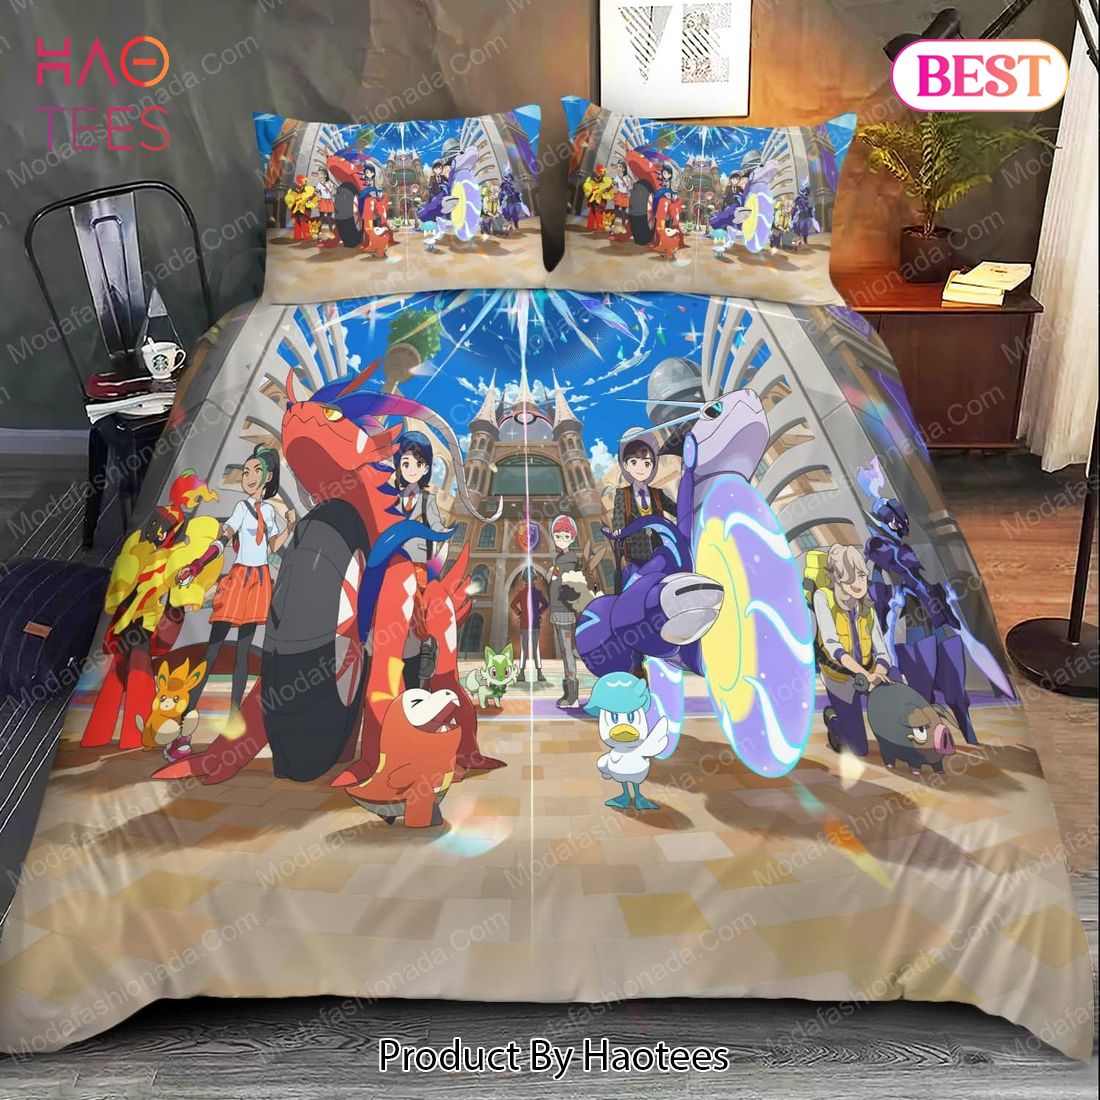 Buy Pokemon Scarlet and Violet Bedding Sets Bed Sets, Bedroom Sets, Comforter Sets, Duvet Cover, Bedspread